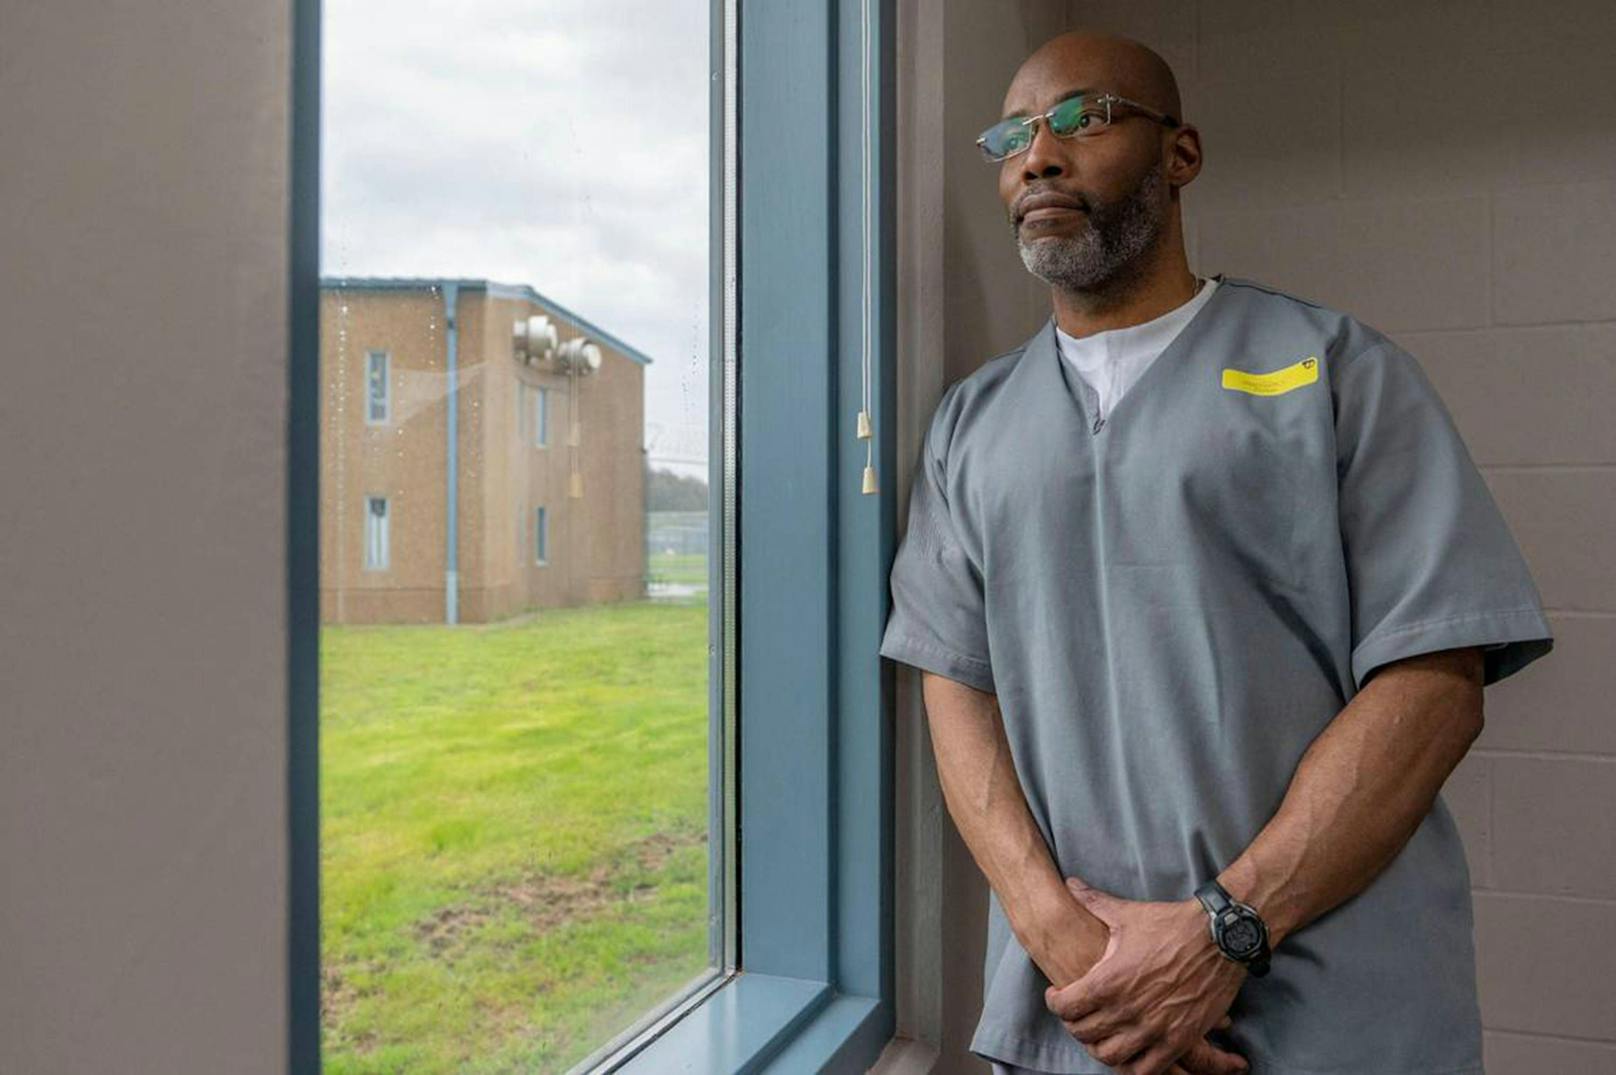 Lamar Johnson verbrachte 28 Jahre unschuldig im Gefängnis.